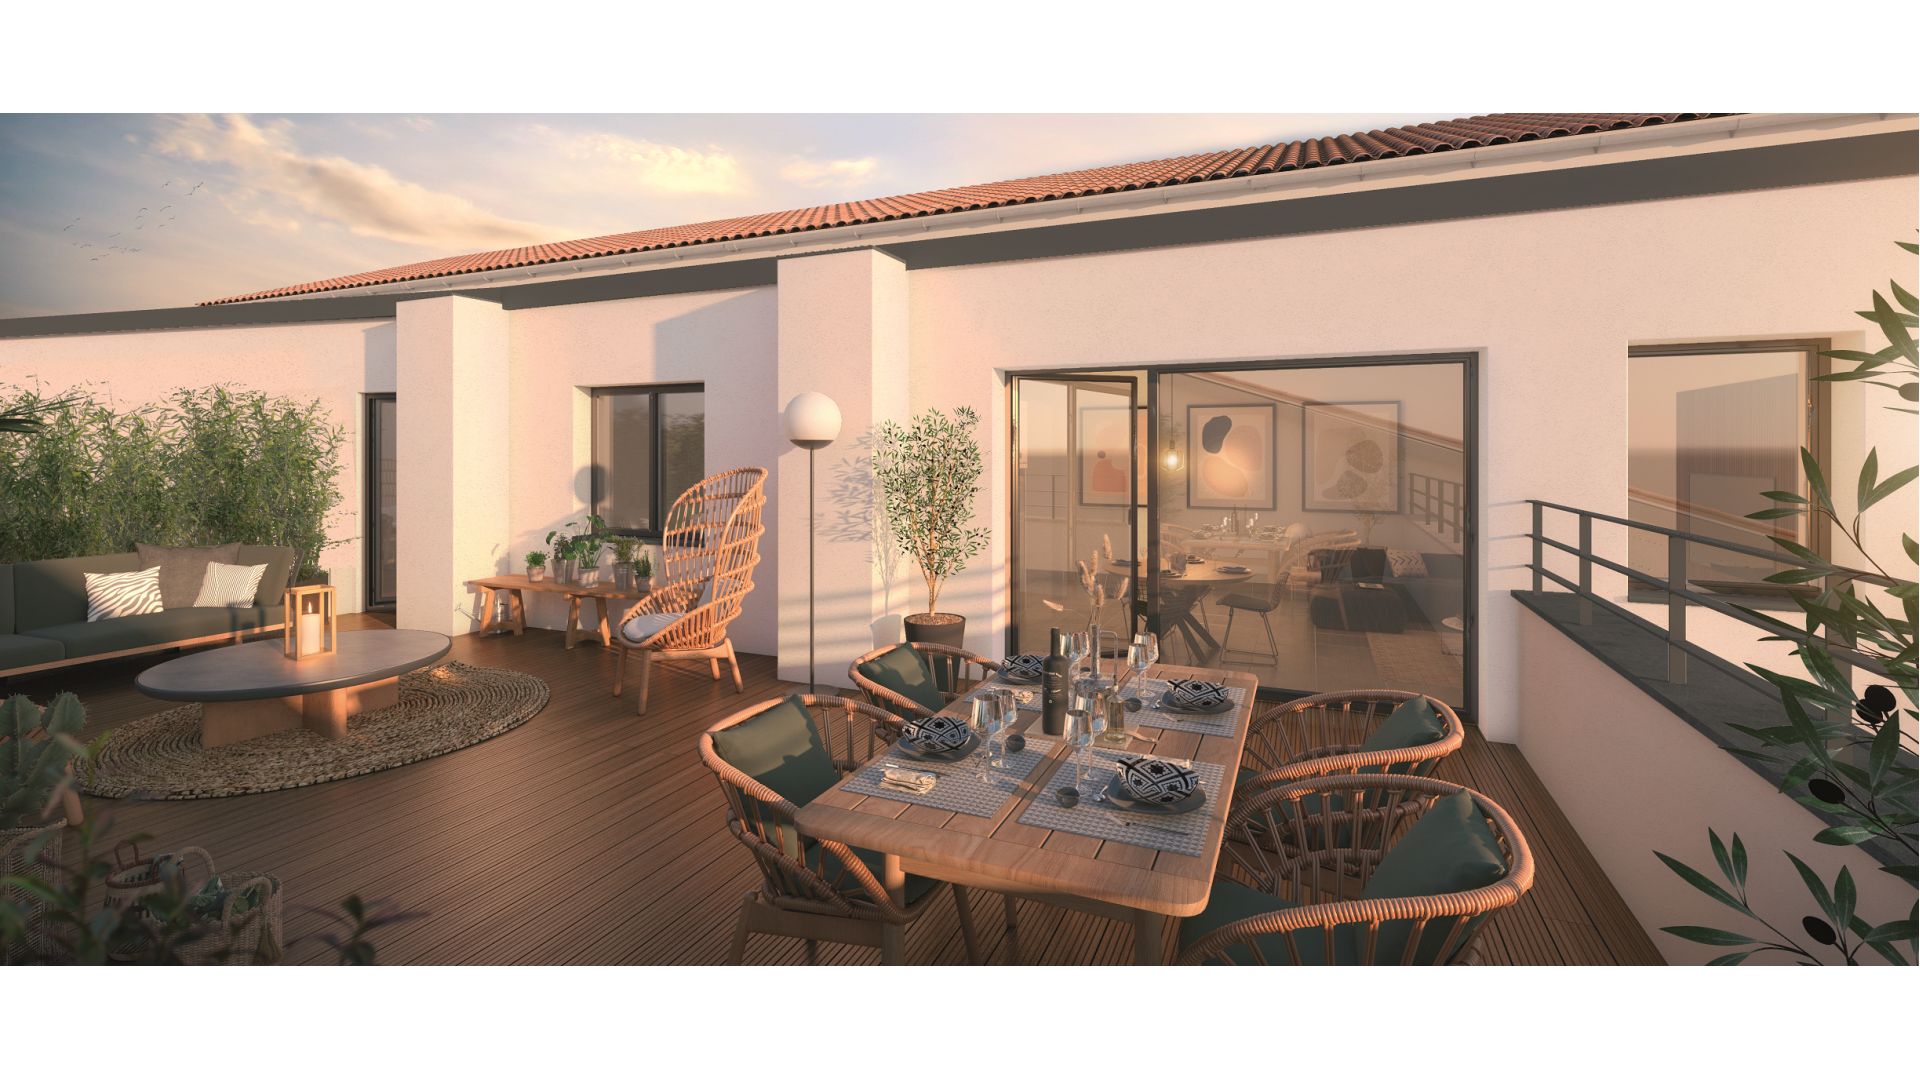 Greencity immobilier - achat appartements neufs du T2 au T3 - Résidence Le Toscan - 31600 Muret Centre ville - vue terrasse